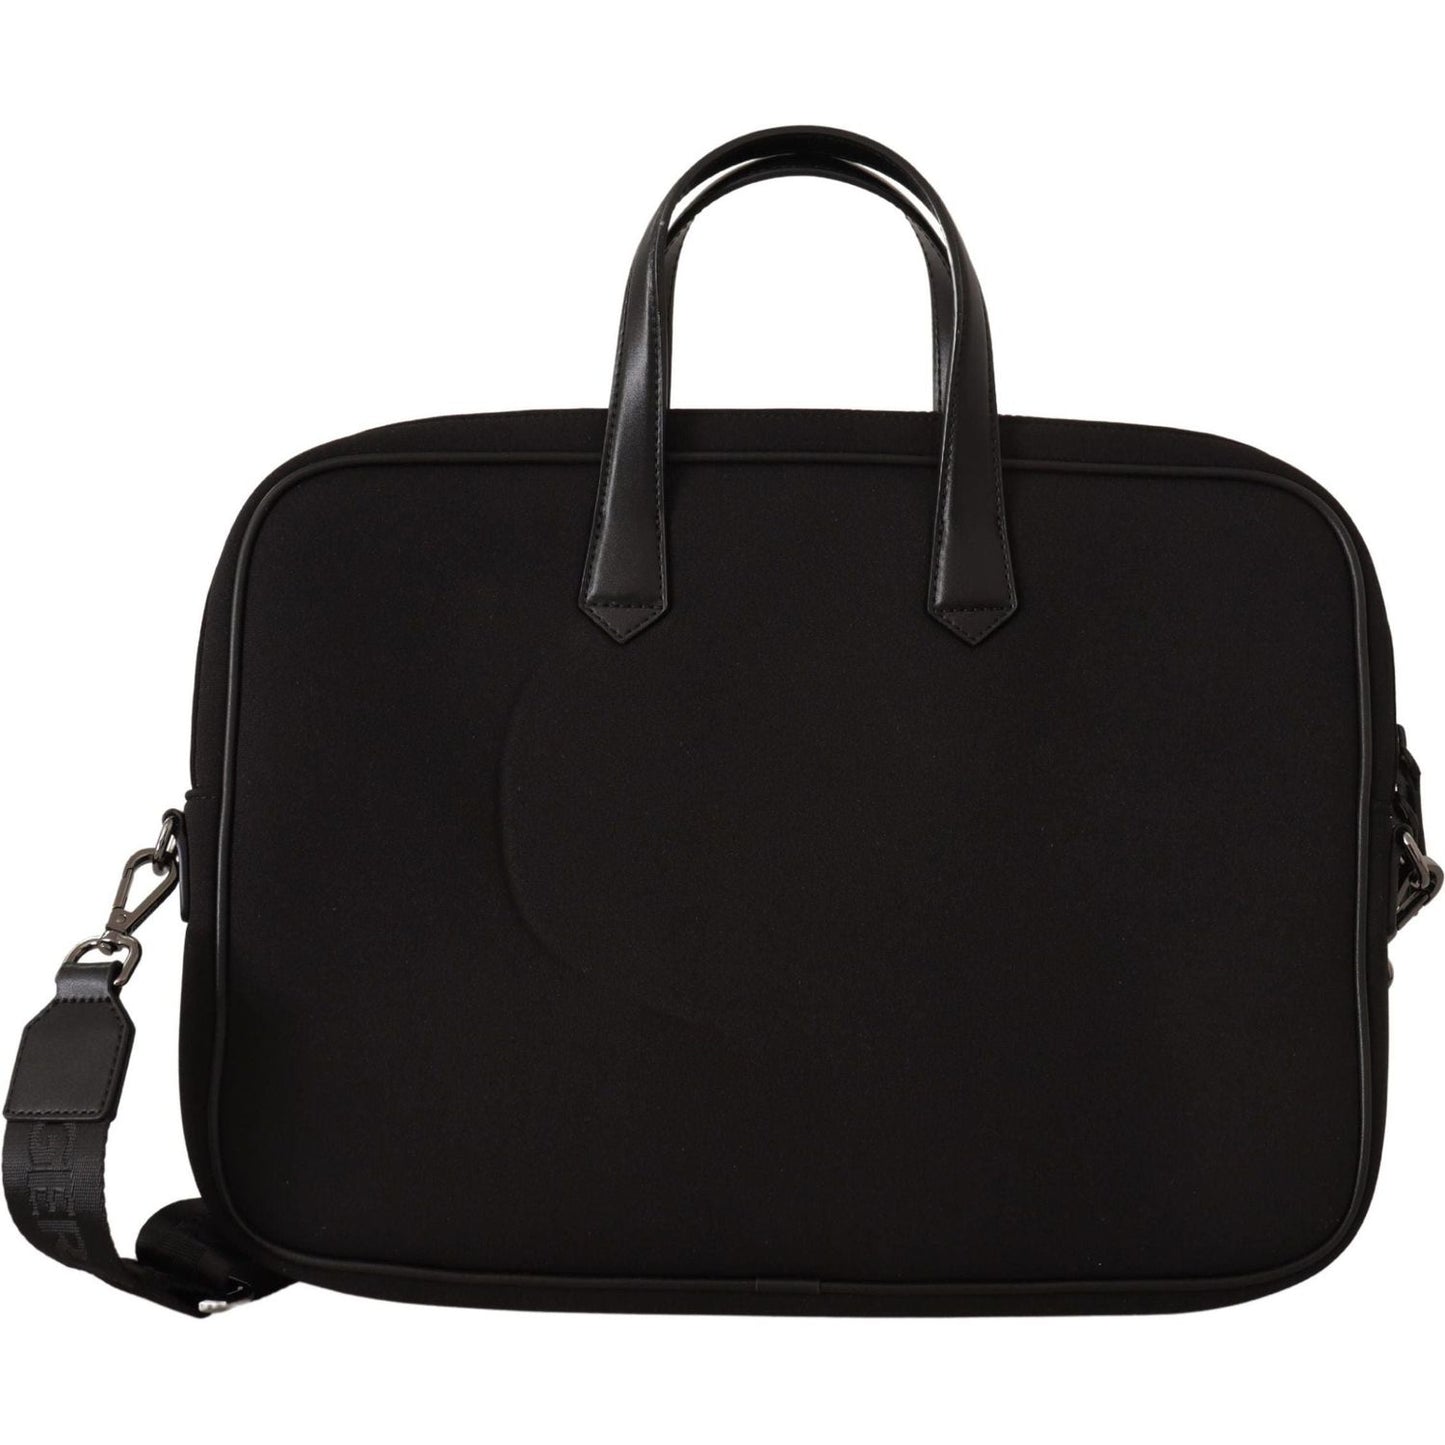 Karl Lagerfeld Sleek Nylon Laptop Crossbody Bag For Sophisticated Style black-nylon-laptop-crossbody-bag IMG_7548-scaled-d59877ec-9b6.jpg